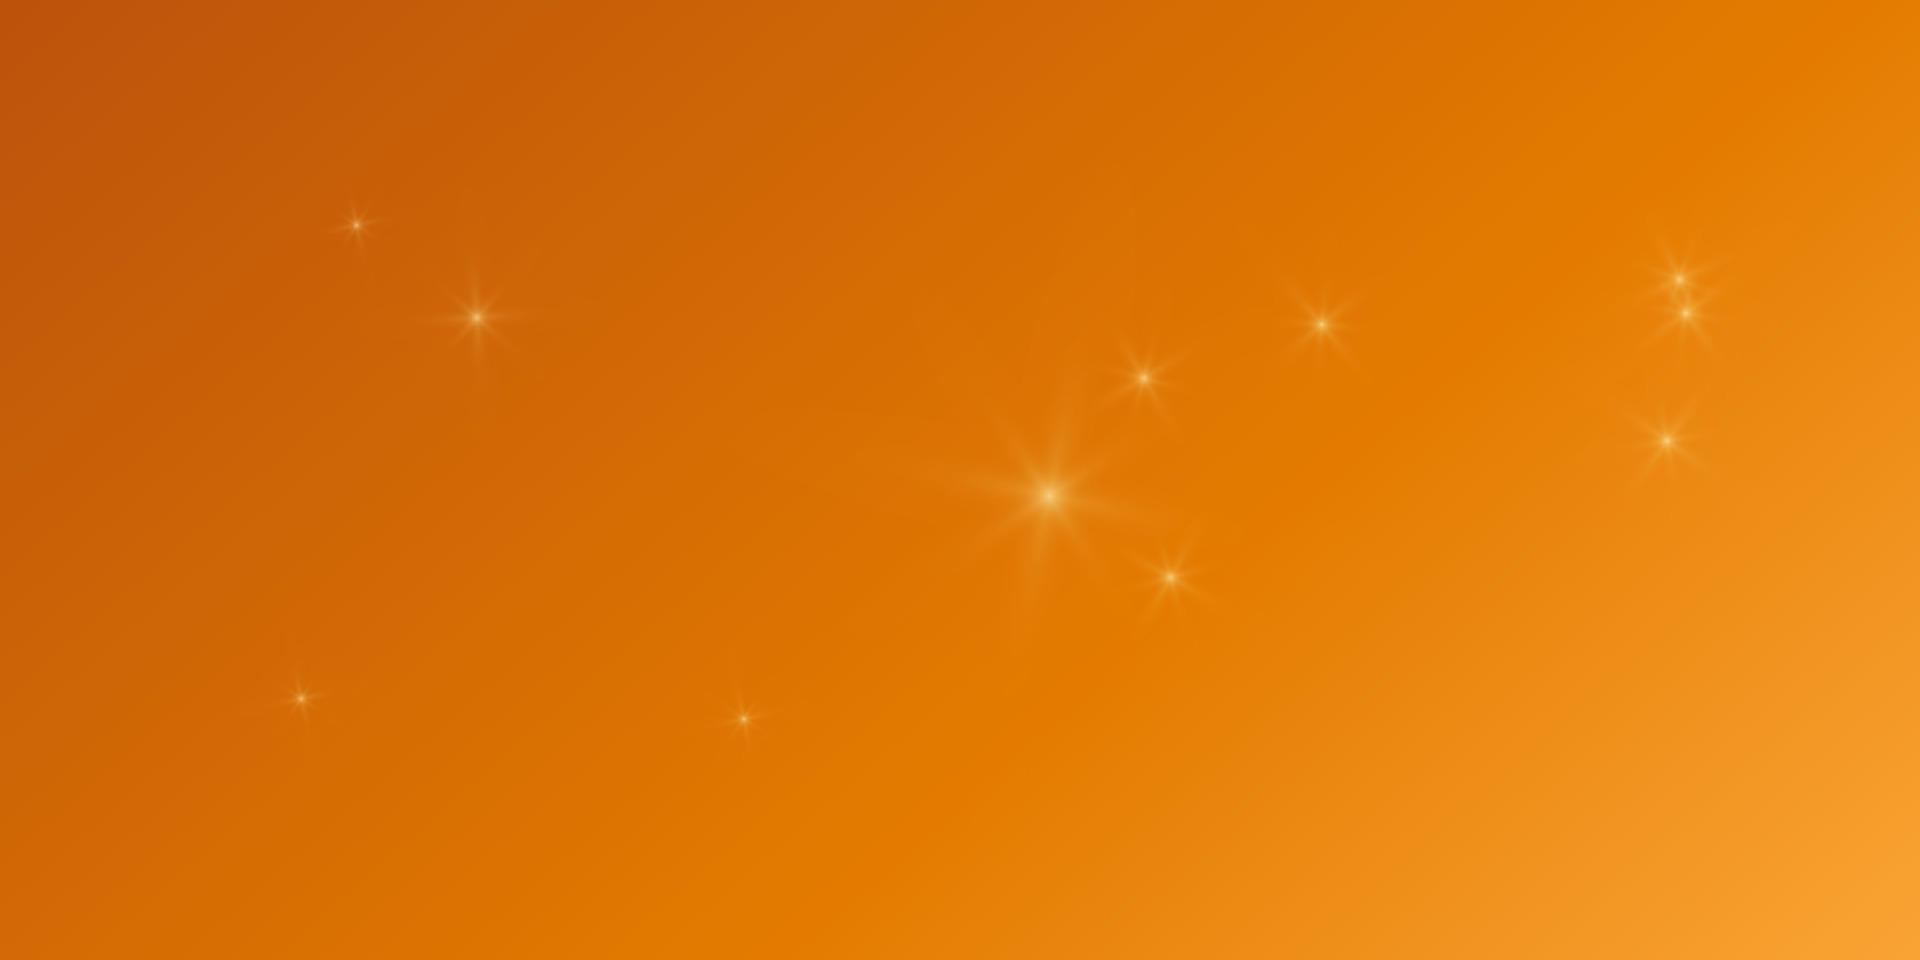 sfondo luminoso colorato sfumato con luci abbaglianti di bagliori di stelle. illustrazione vettoriale formato orizzontale